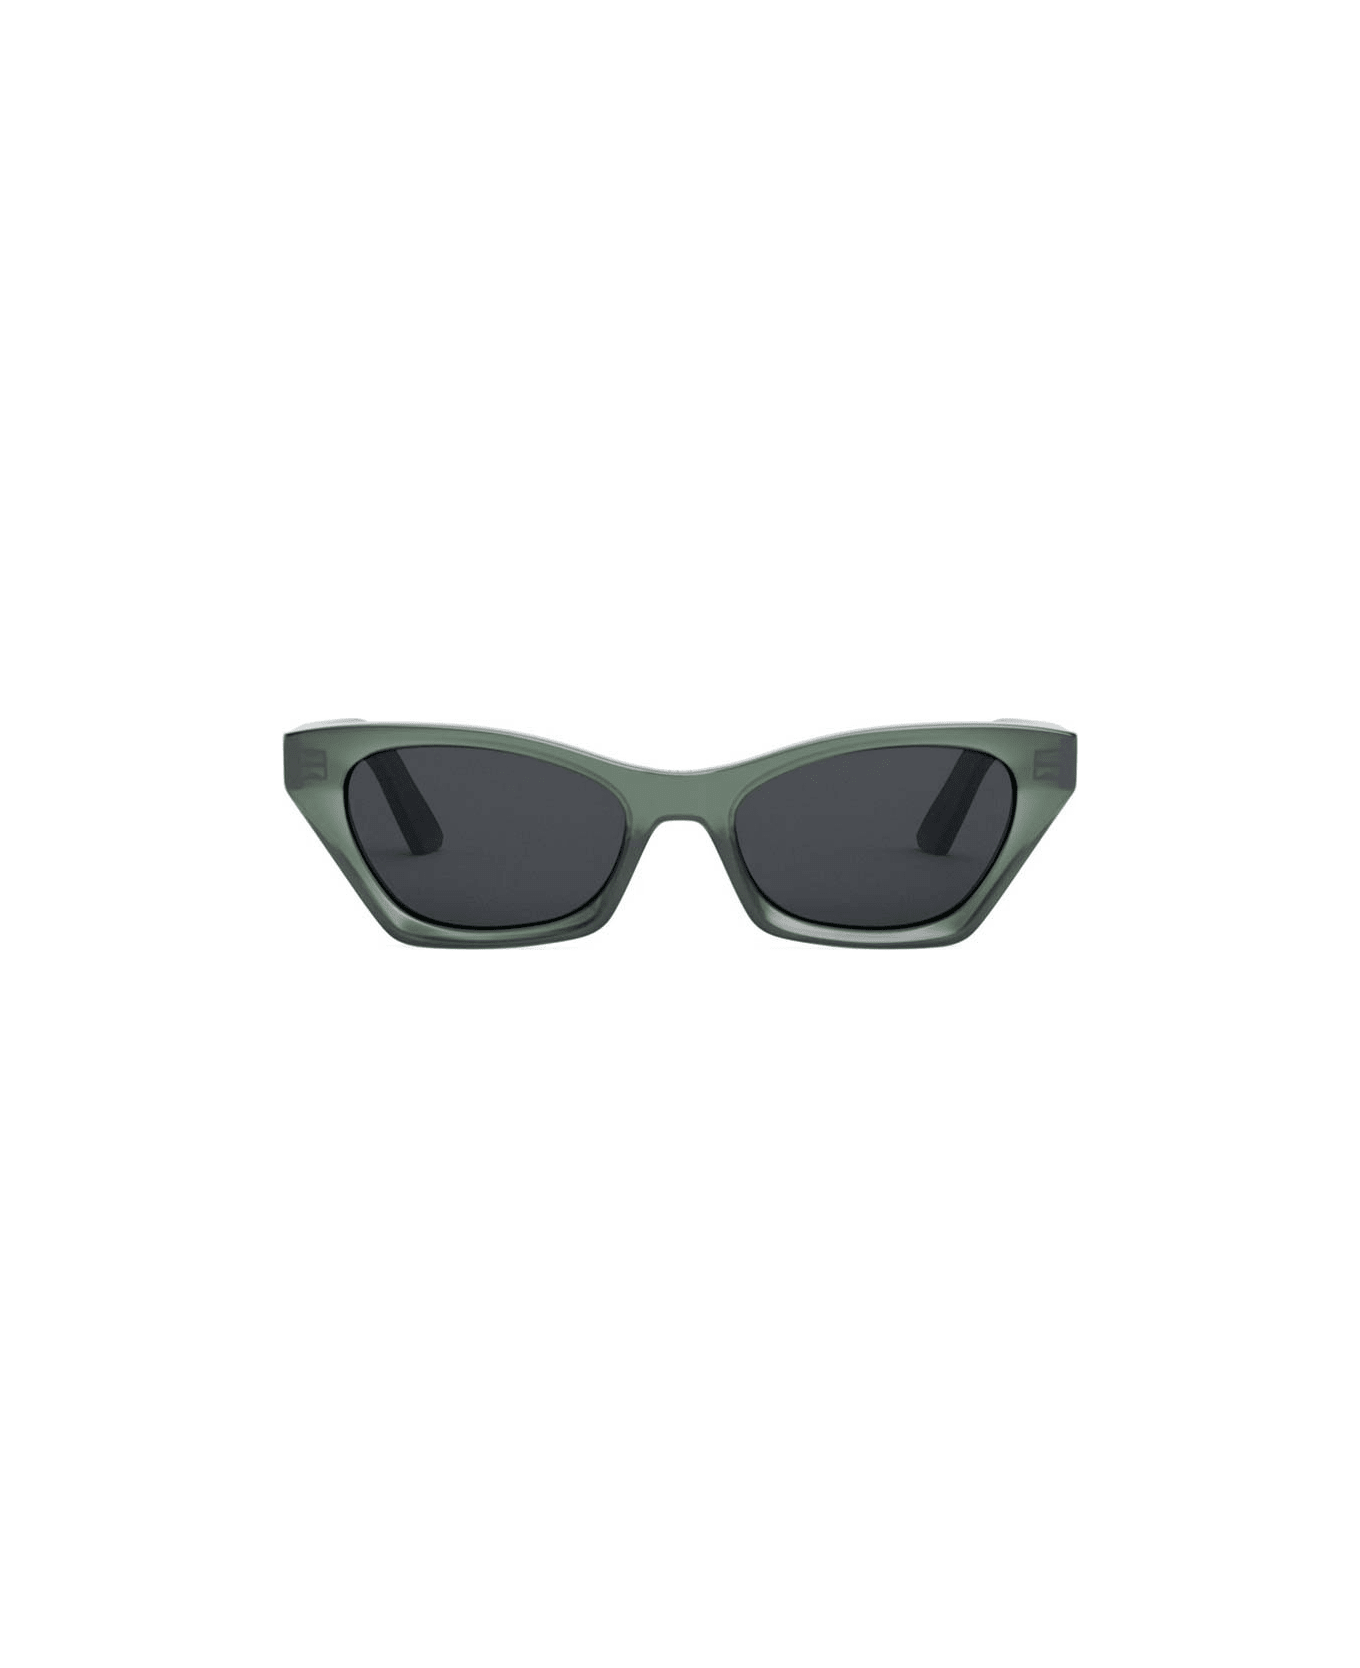 Dior Eyewear Sunglasses - Verde/Grigio サングラス